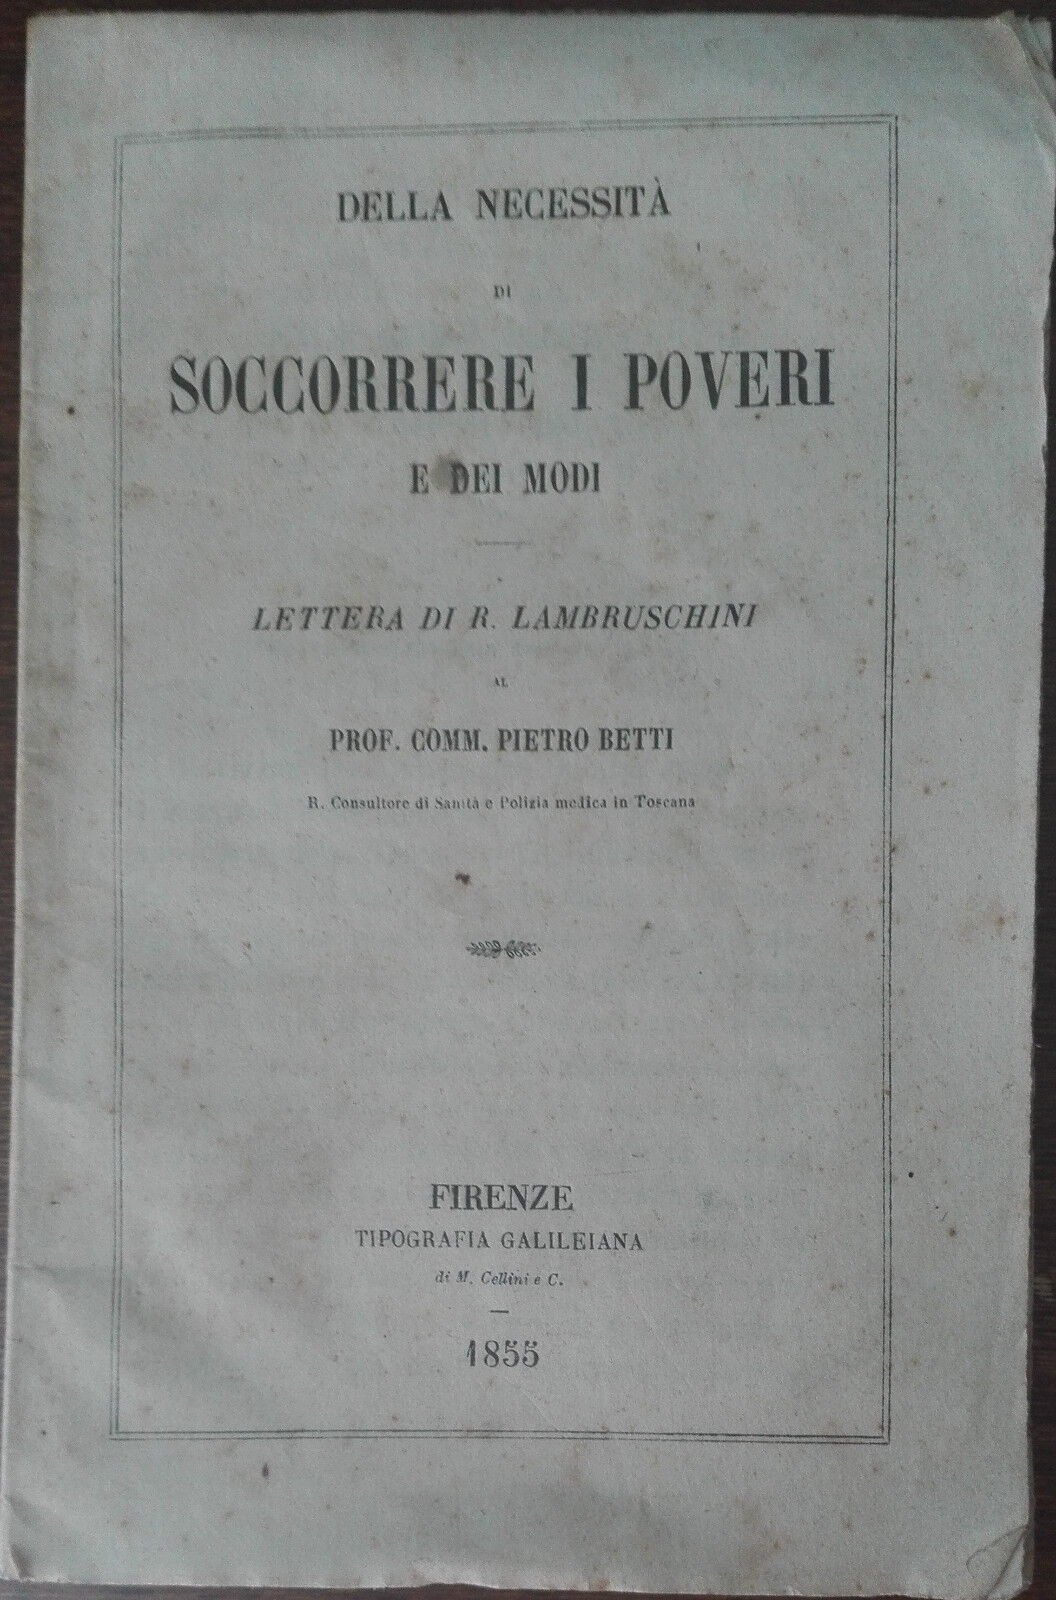 Della necessit? di soccorrere i poveri e dei modi - AA.VV. - Galileiana,1855 - A